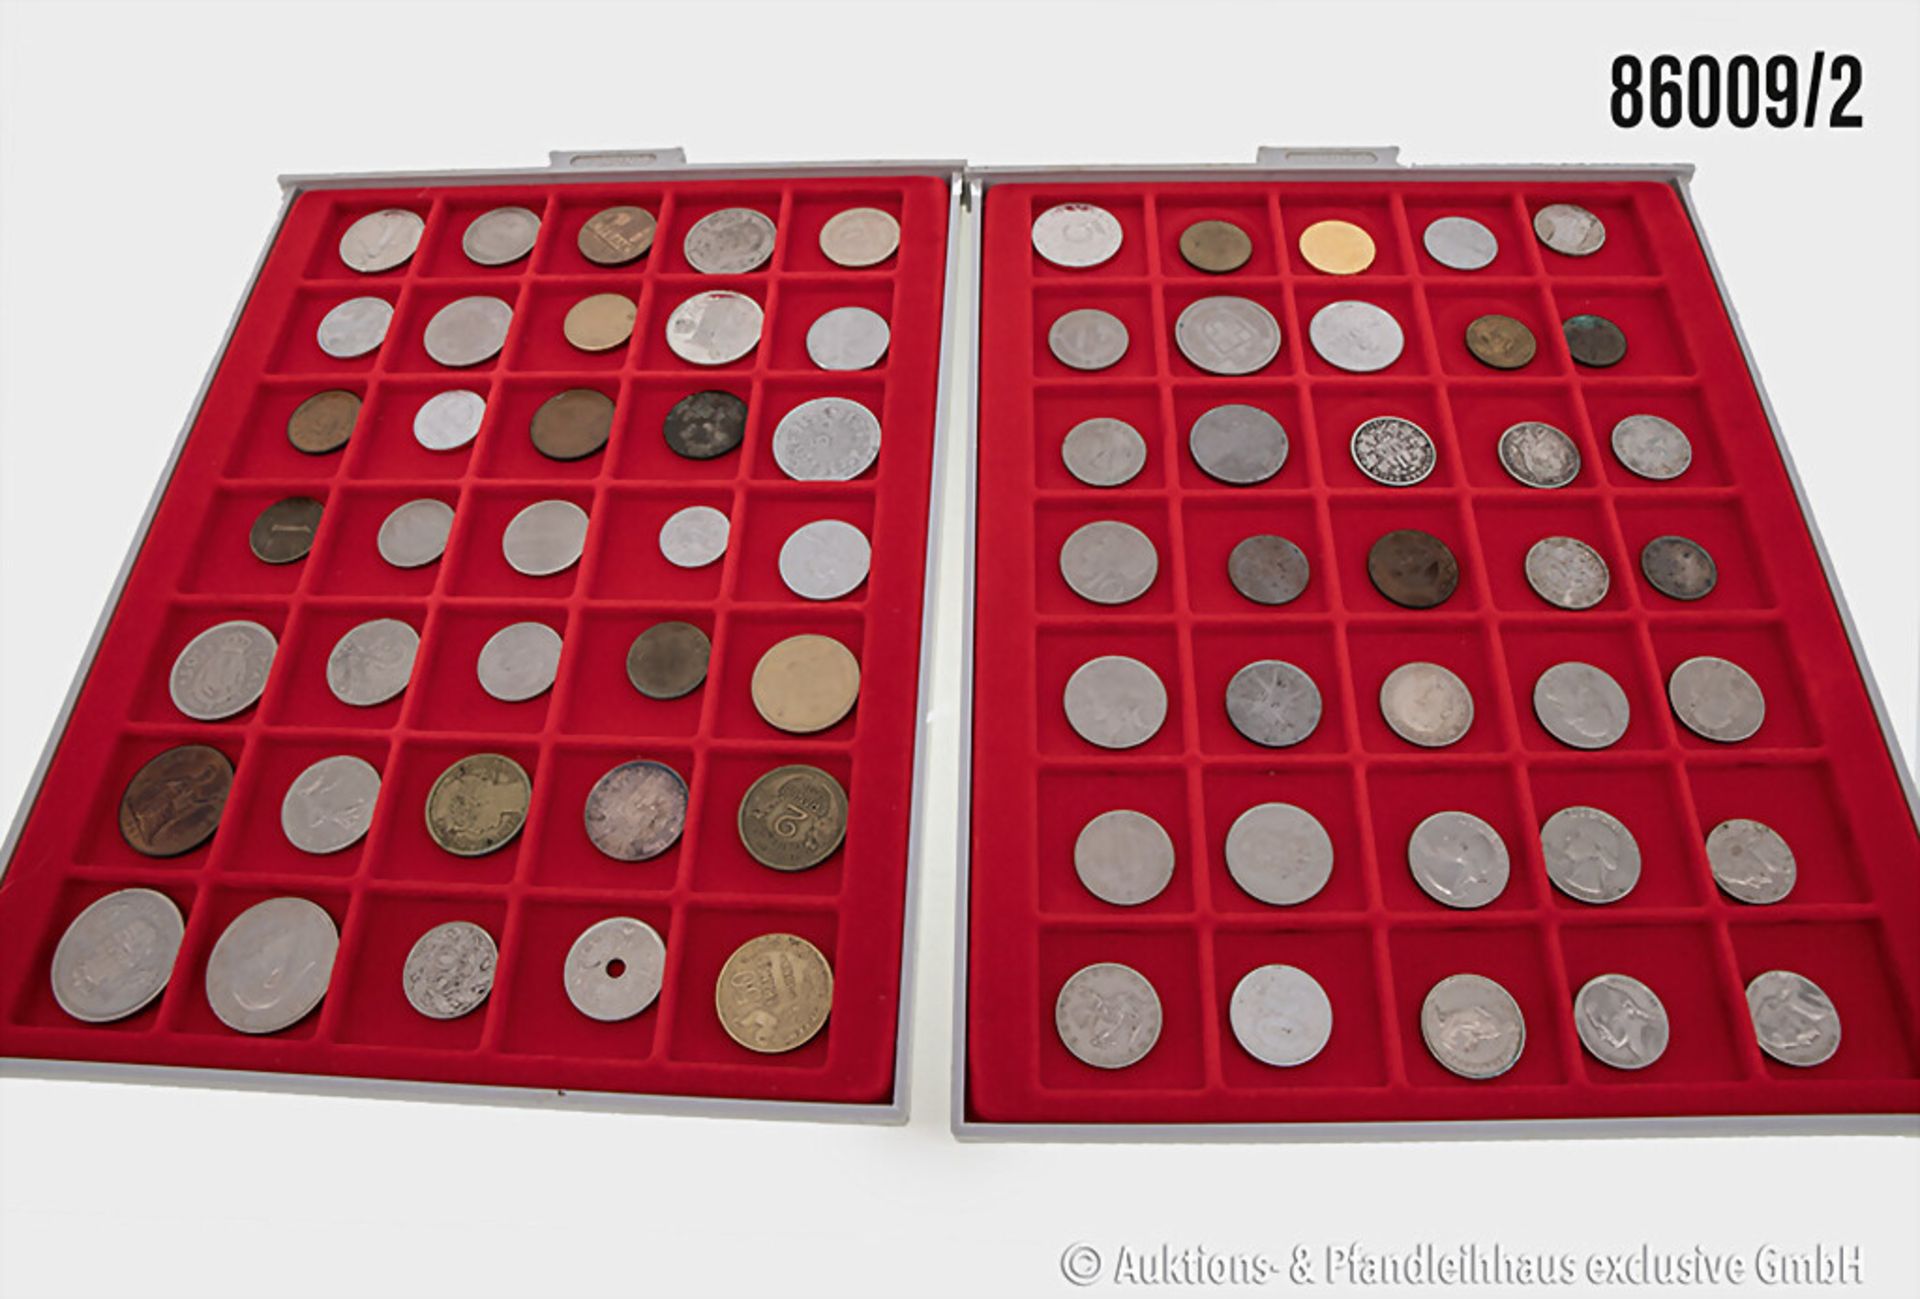 Konvolut Münzen in 6 Lindner Münzboxen, verschiedene Münzen Europa/Welt sowie 3 Münzen ... - Bild 2 aus 3